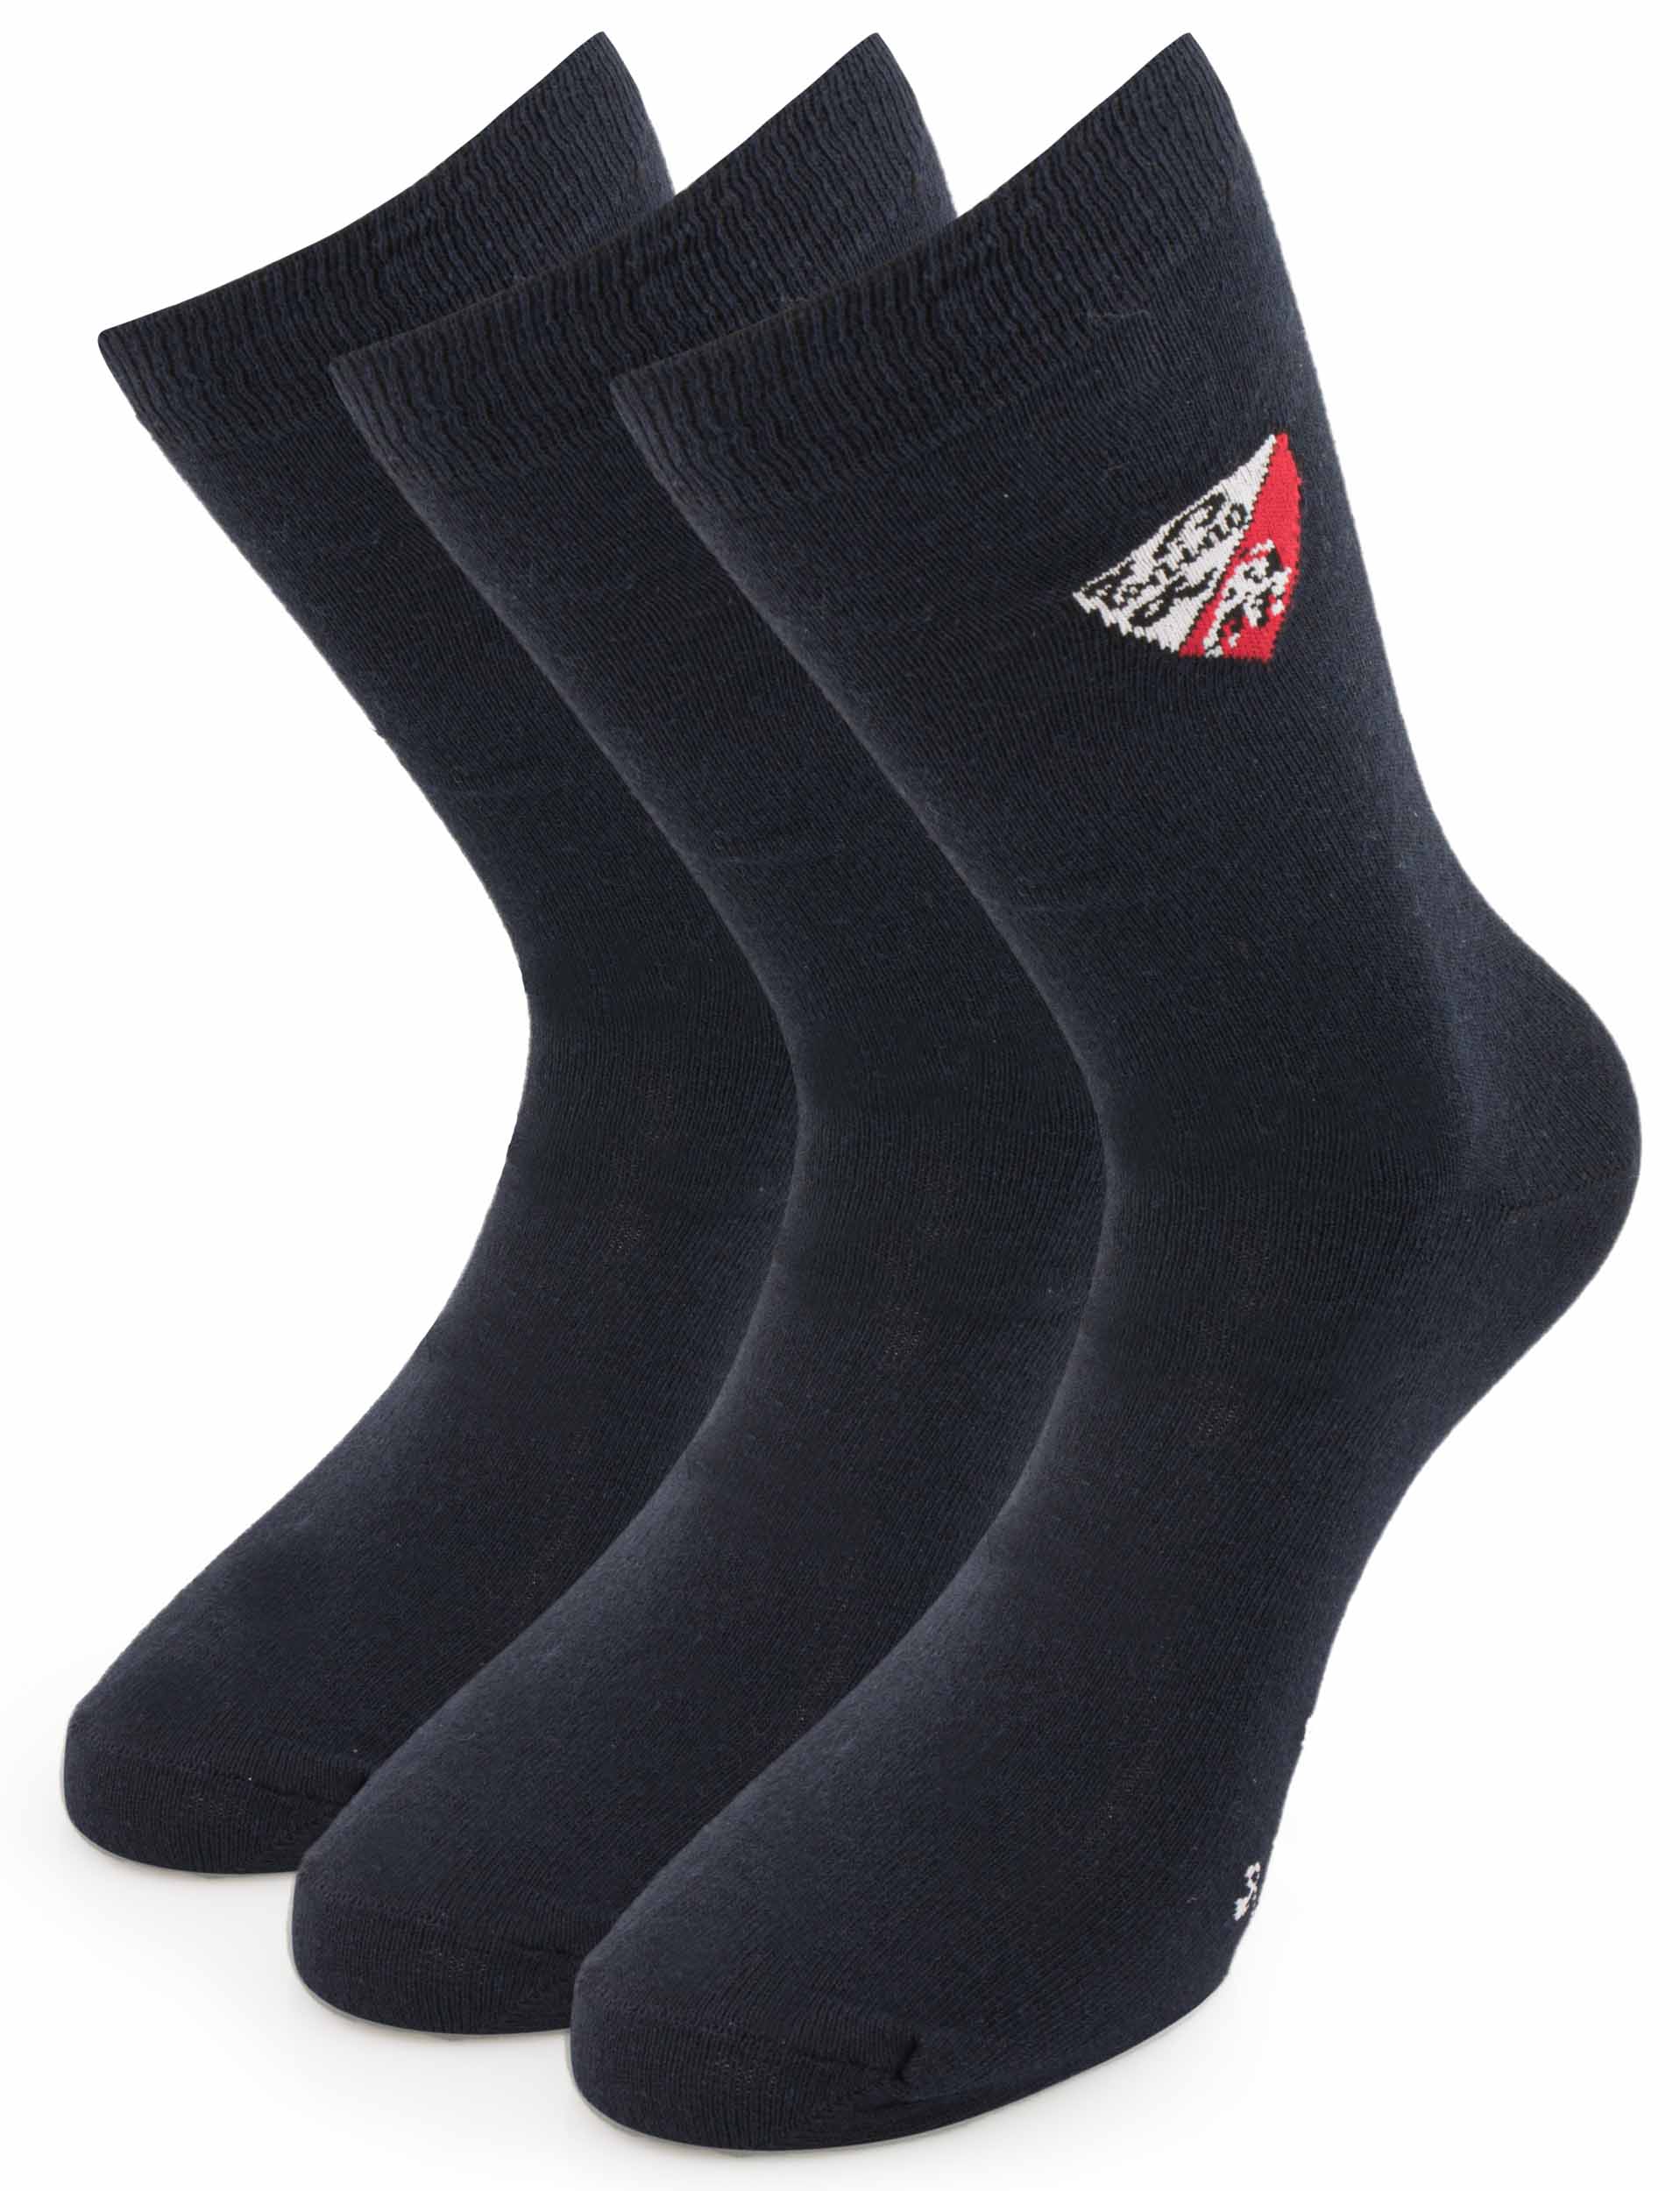 Ponožky Tonino Lamborghini modré 3 páry|39-42